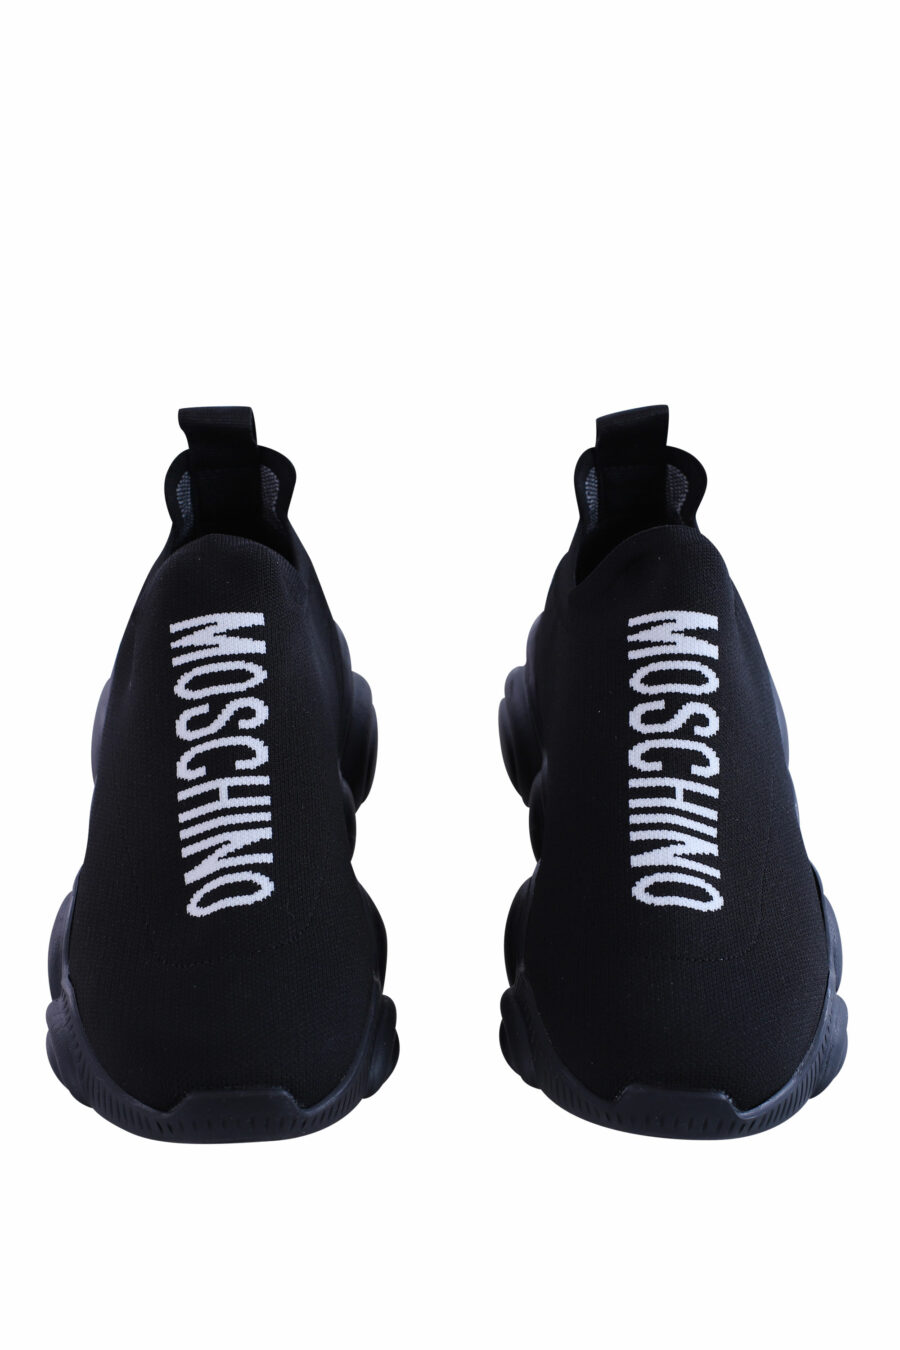 Zapatillas negras elásticas con maxilogo vertical - IMG 2991